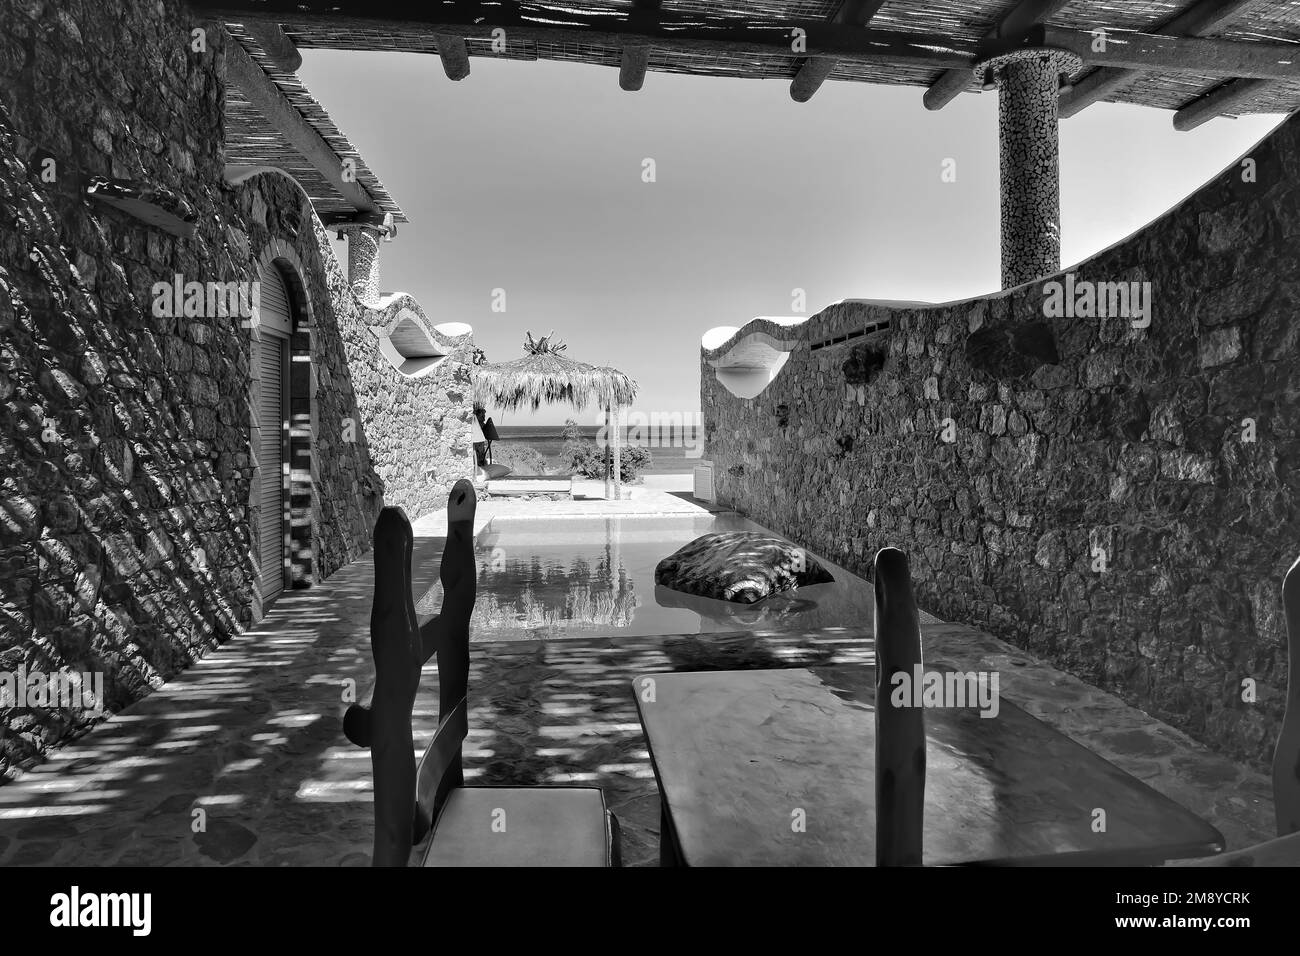 IOS, Grèce - 6 juin 2021 : vue sur une belle villa privée décorée avec une piscine dans iOS Grèce surplombant la mer Égée Banque D'Images